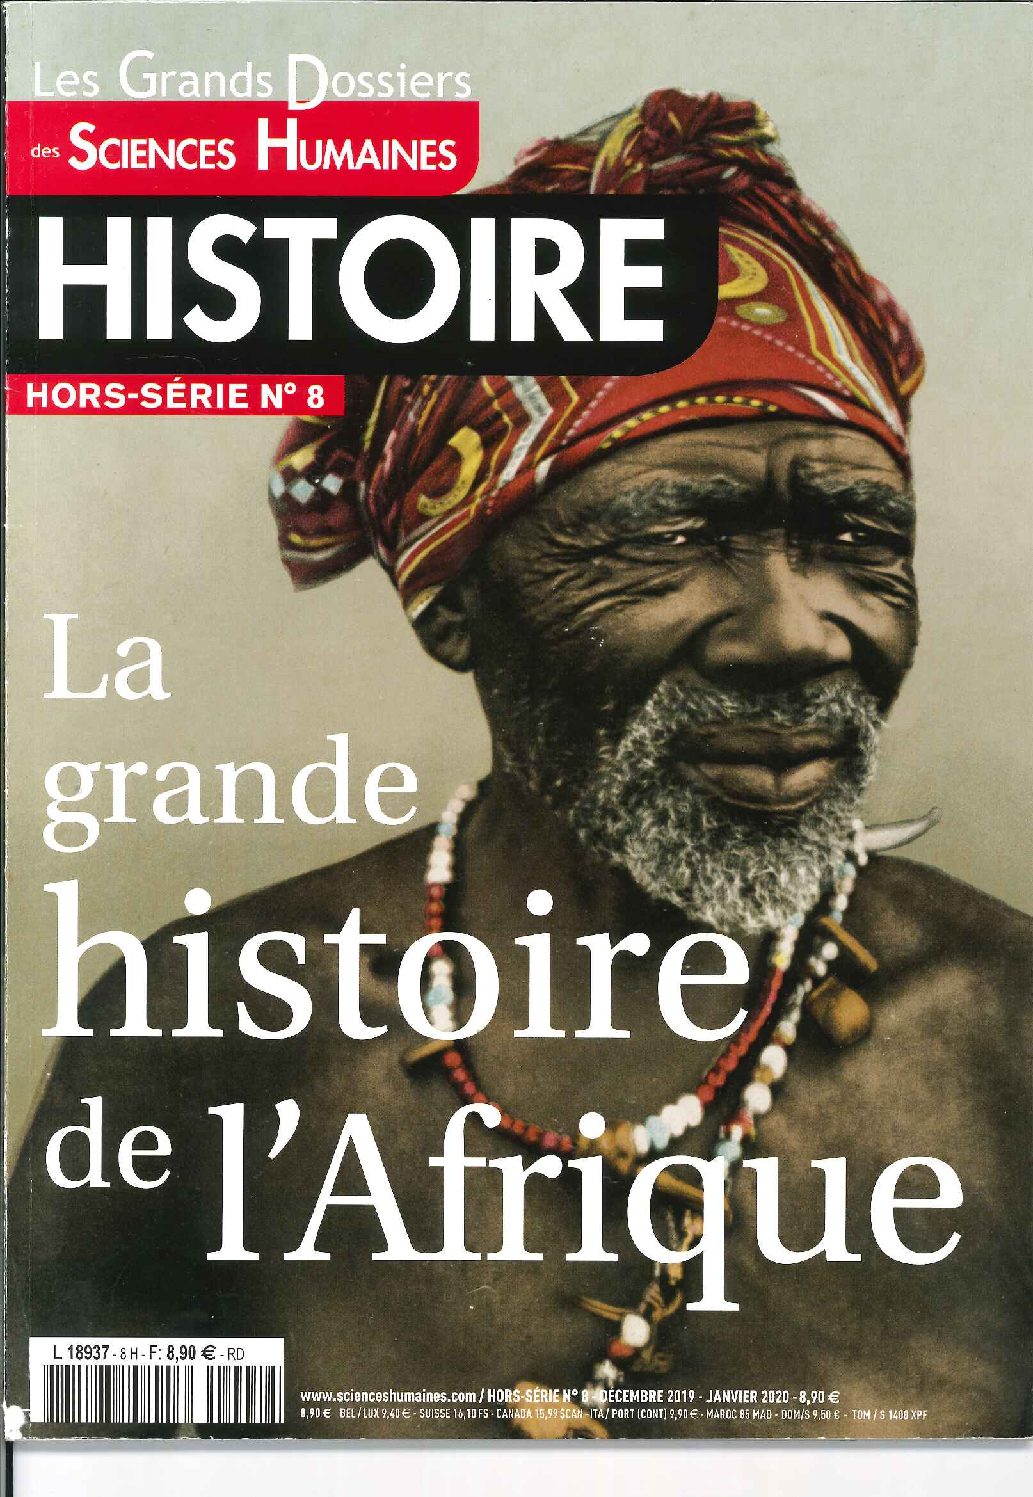 Dossier : Les traites vues d'Afrique - Magazine Sciences Humaines - Hors-série n°8